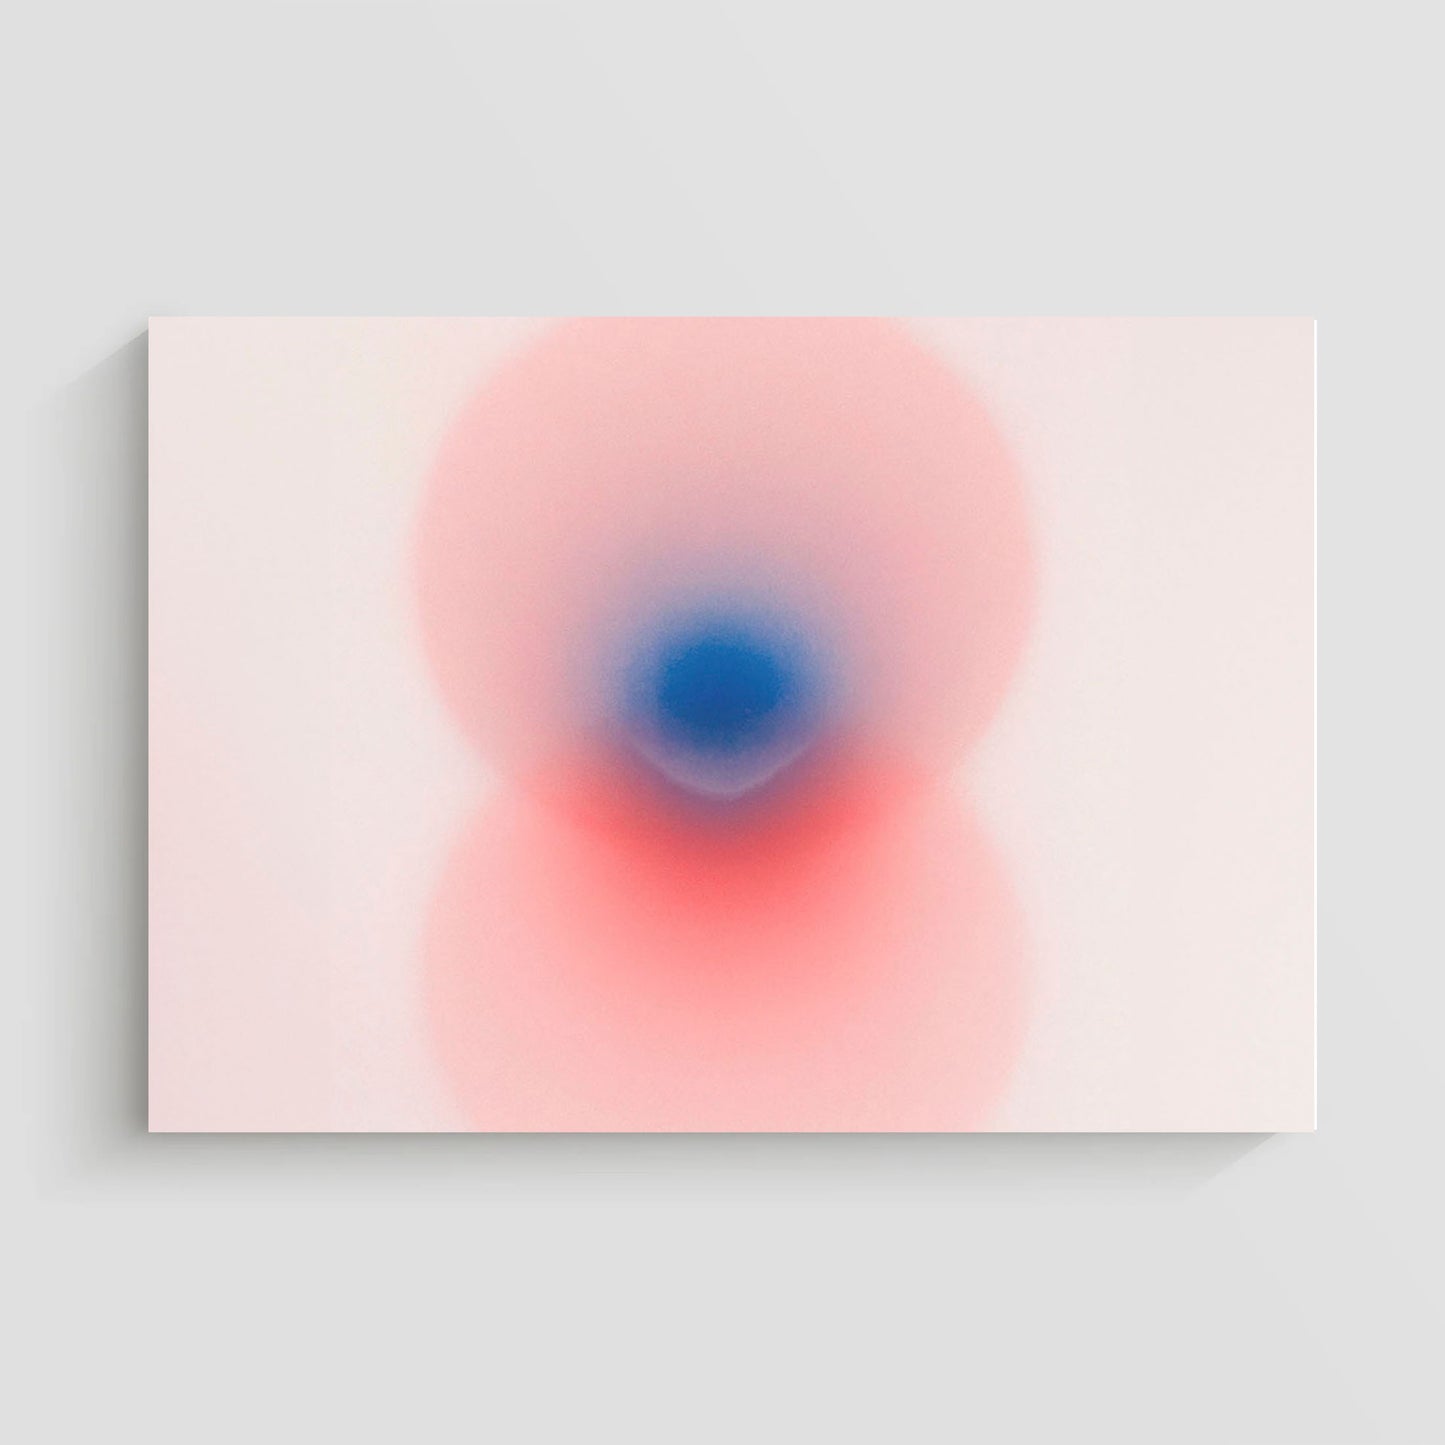 Imagen de arte abstracto que muestra una fusión de colores rojo y azul en un fondo claro, creando un efecto visual suave y etéreo.